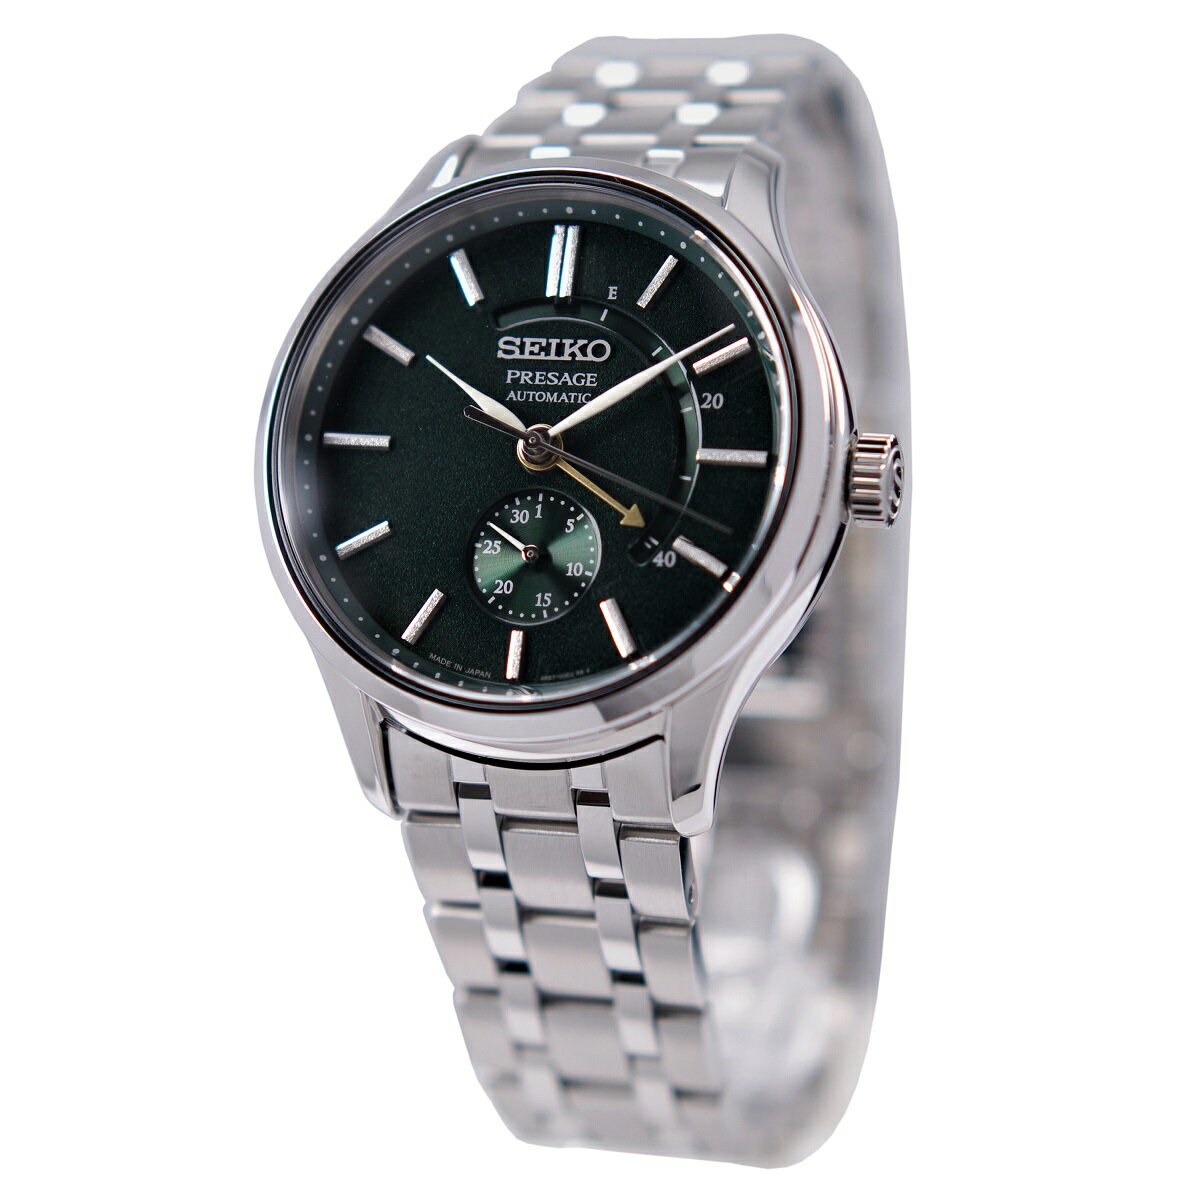 セイコー SEIKO 腕時計 プレザージュ 自動巻き(手巻付き) パワーリザーブ グリーン 日本製 海外モデル SSA397J1 メンズ [逆輸入品]